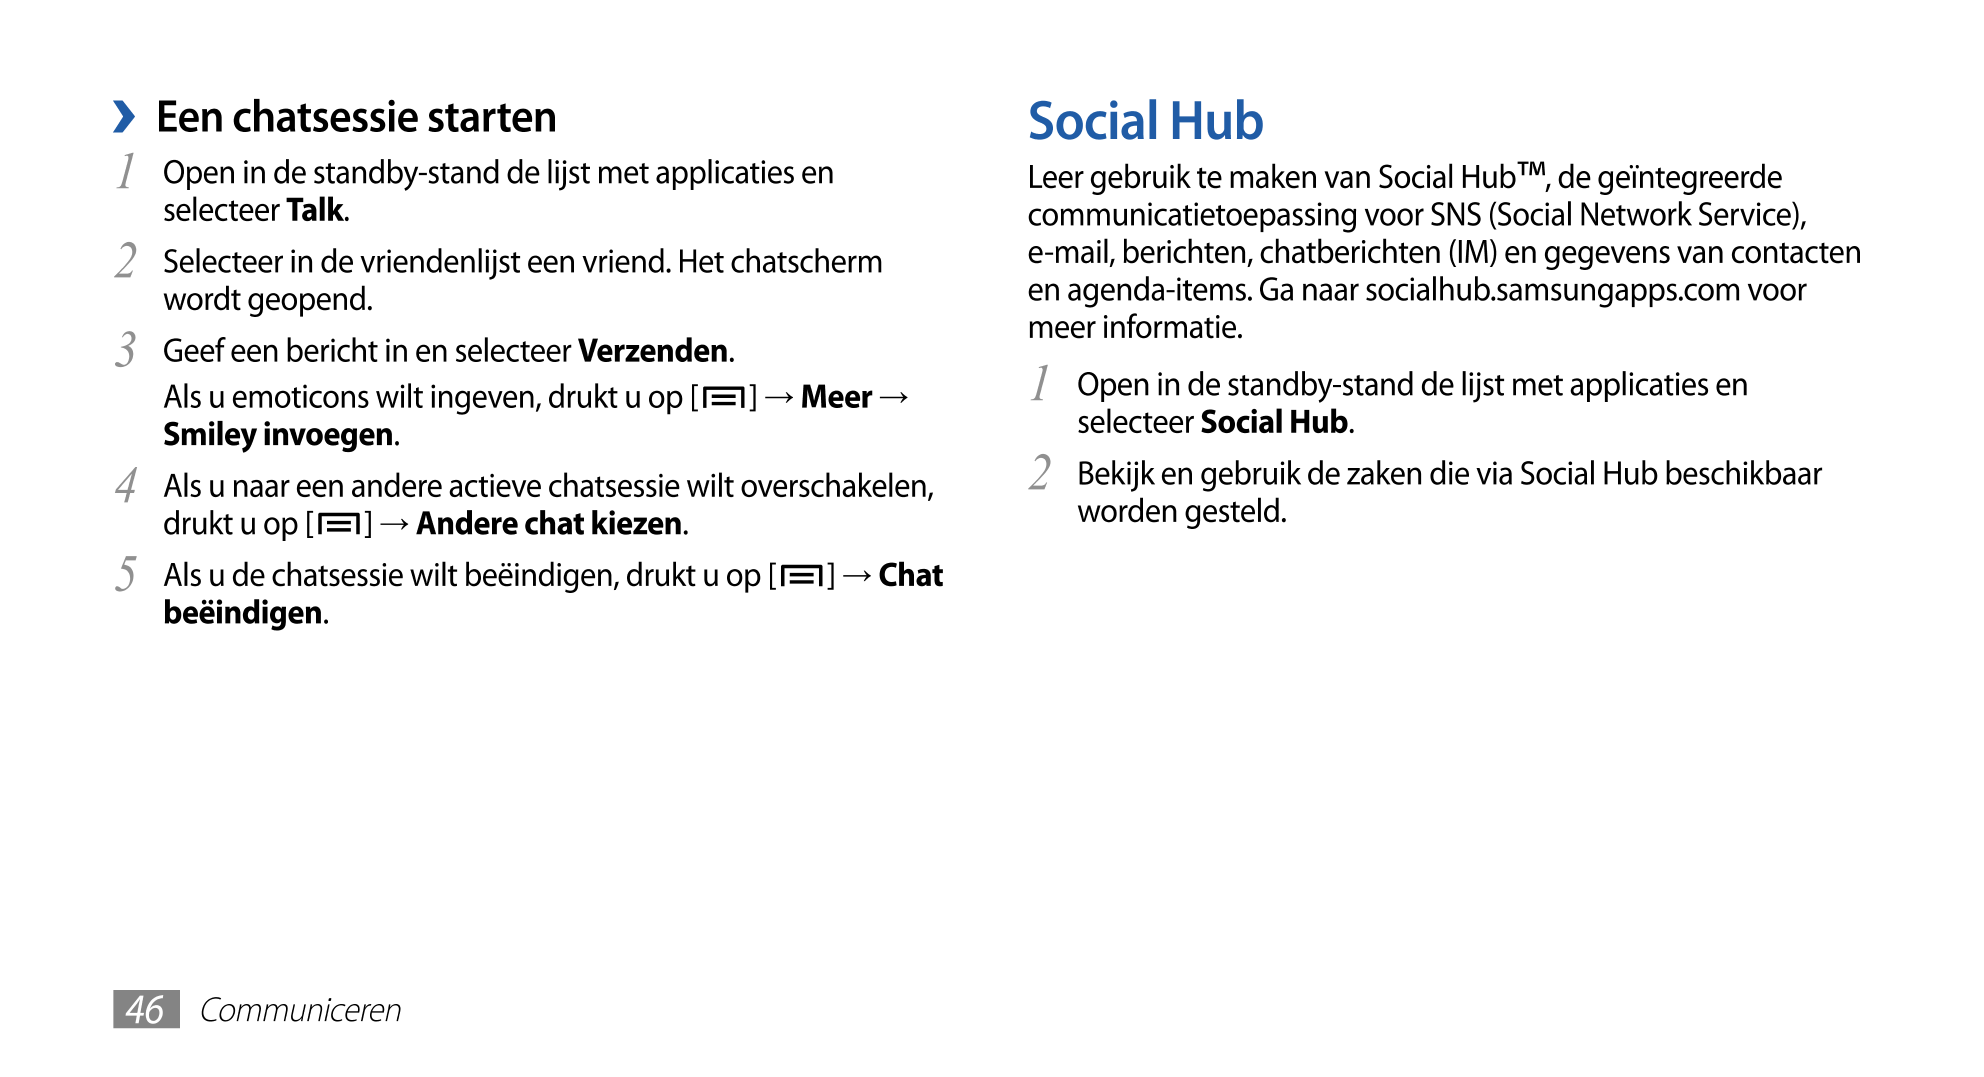   Een chatsessie starten Social Hub
1  Open in de standby-stand de lijst met applicaties en  Leer gebruik te maken van Social Hu